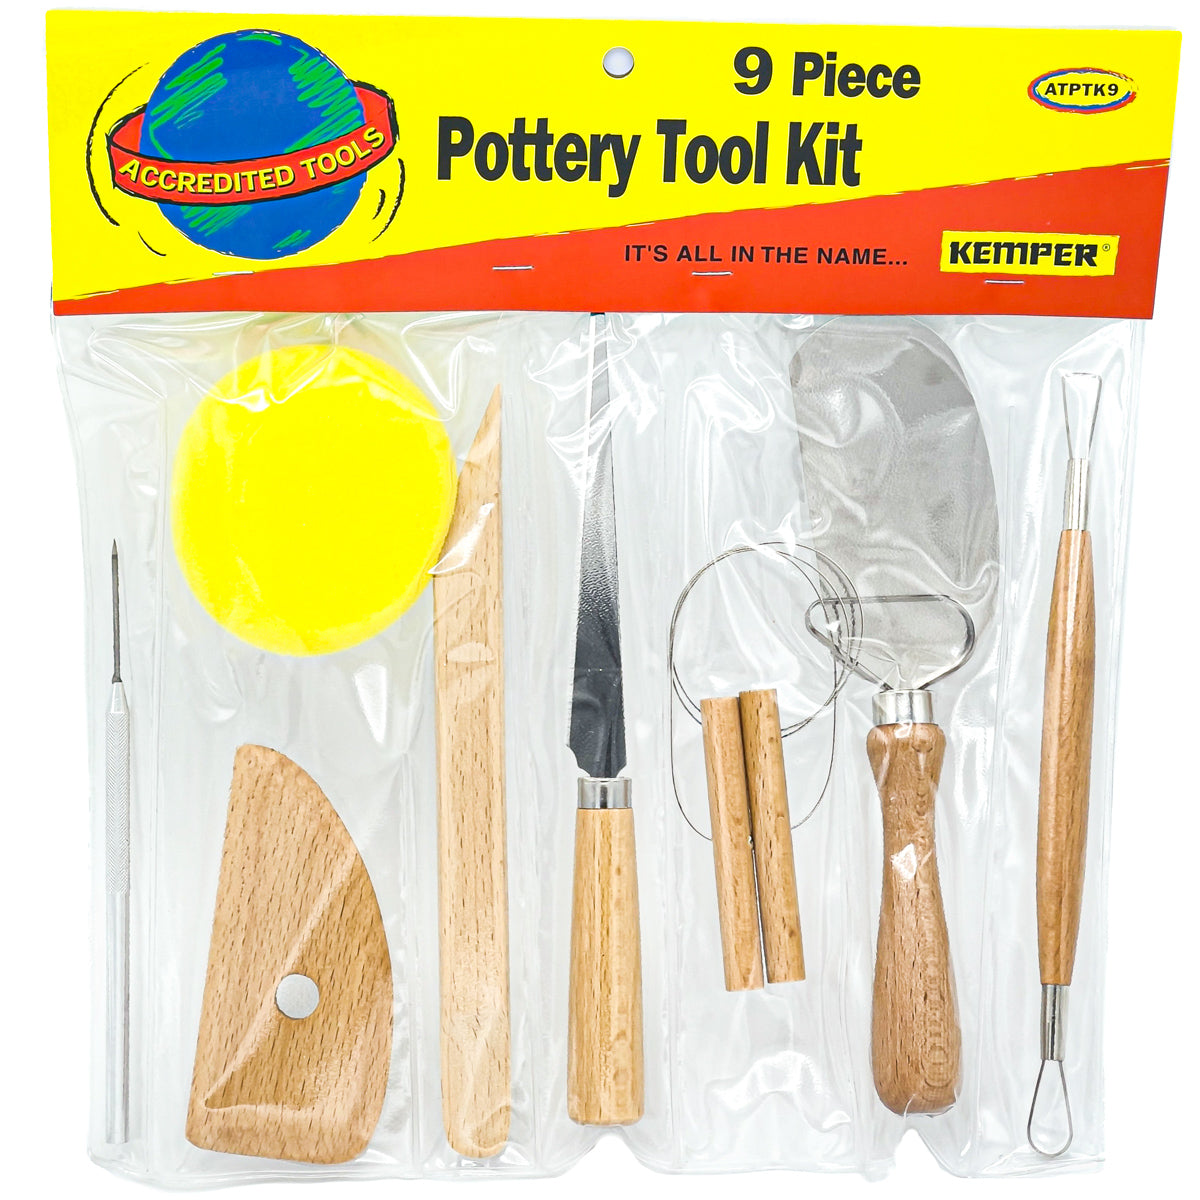 Pottery Tool Kit 8PC